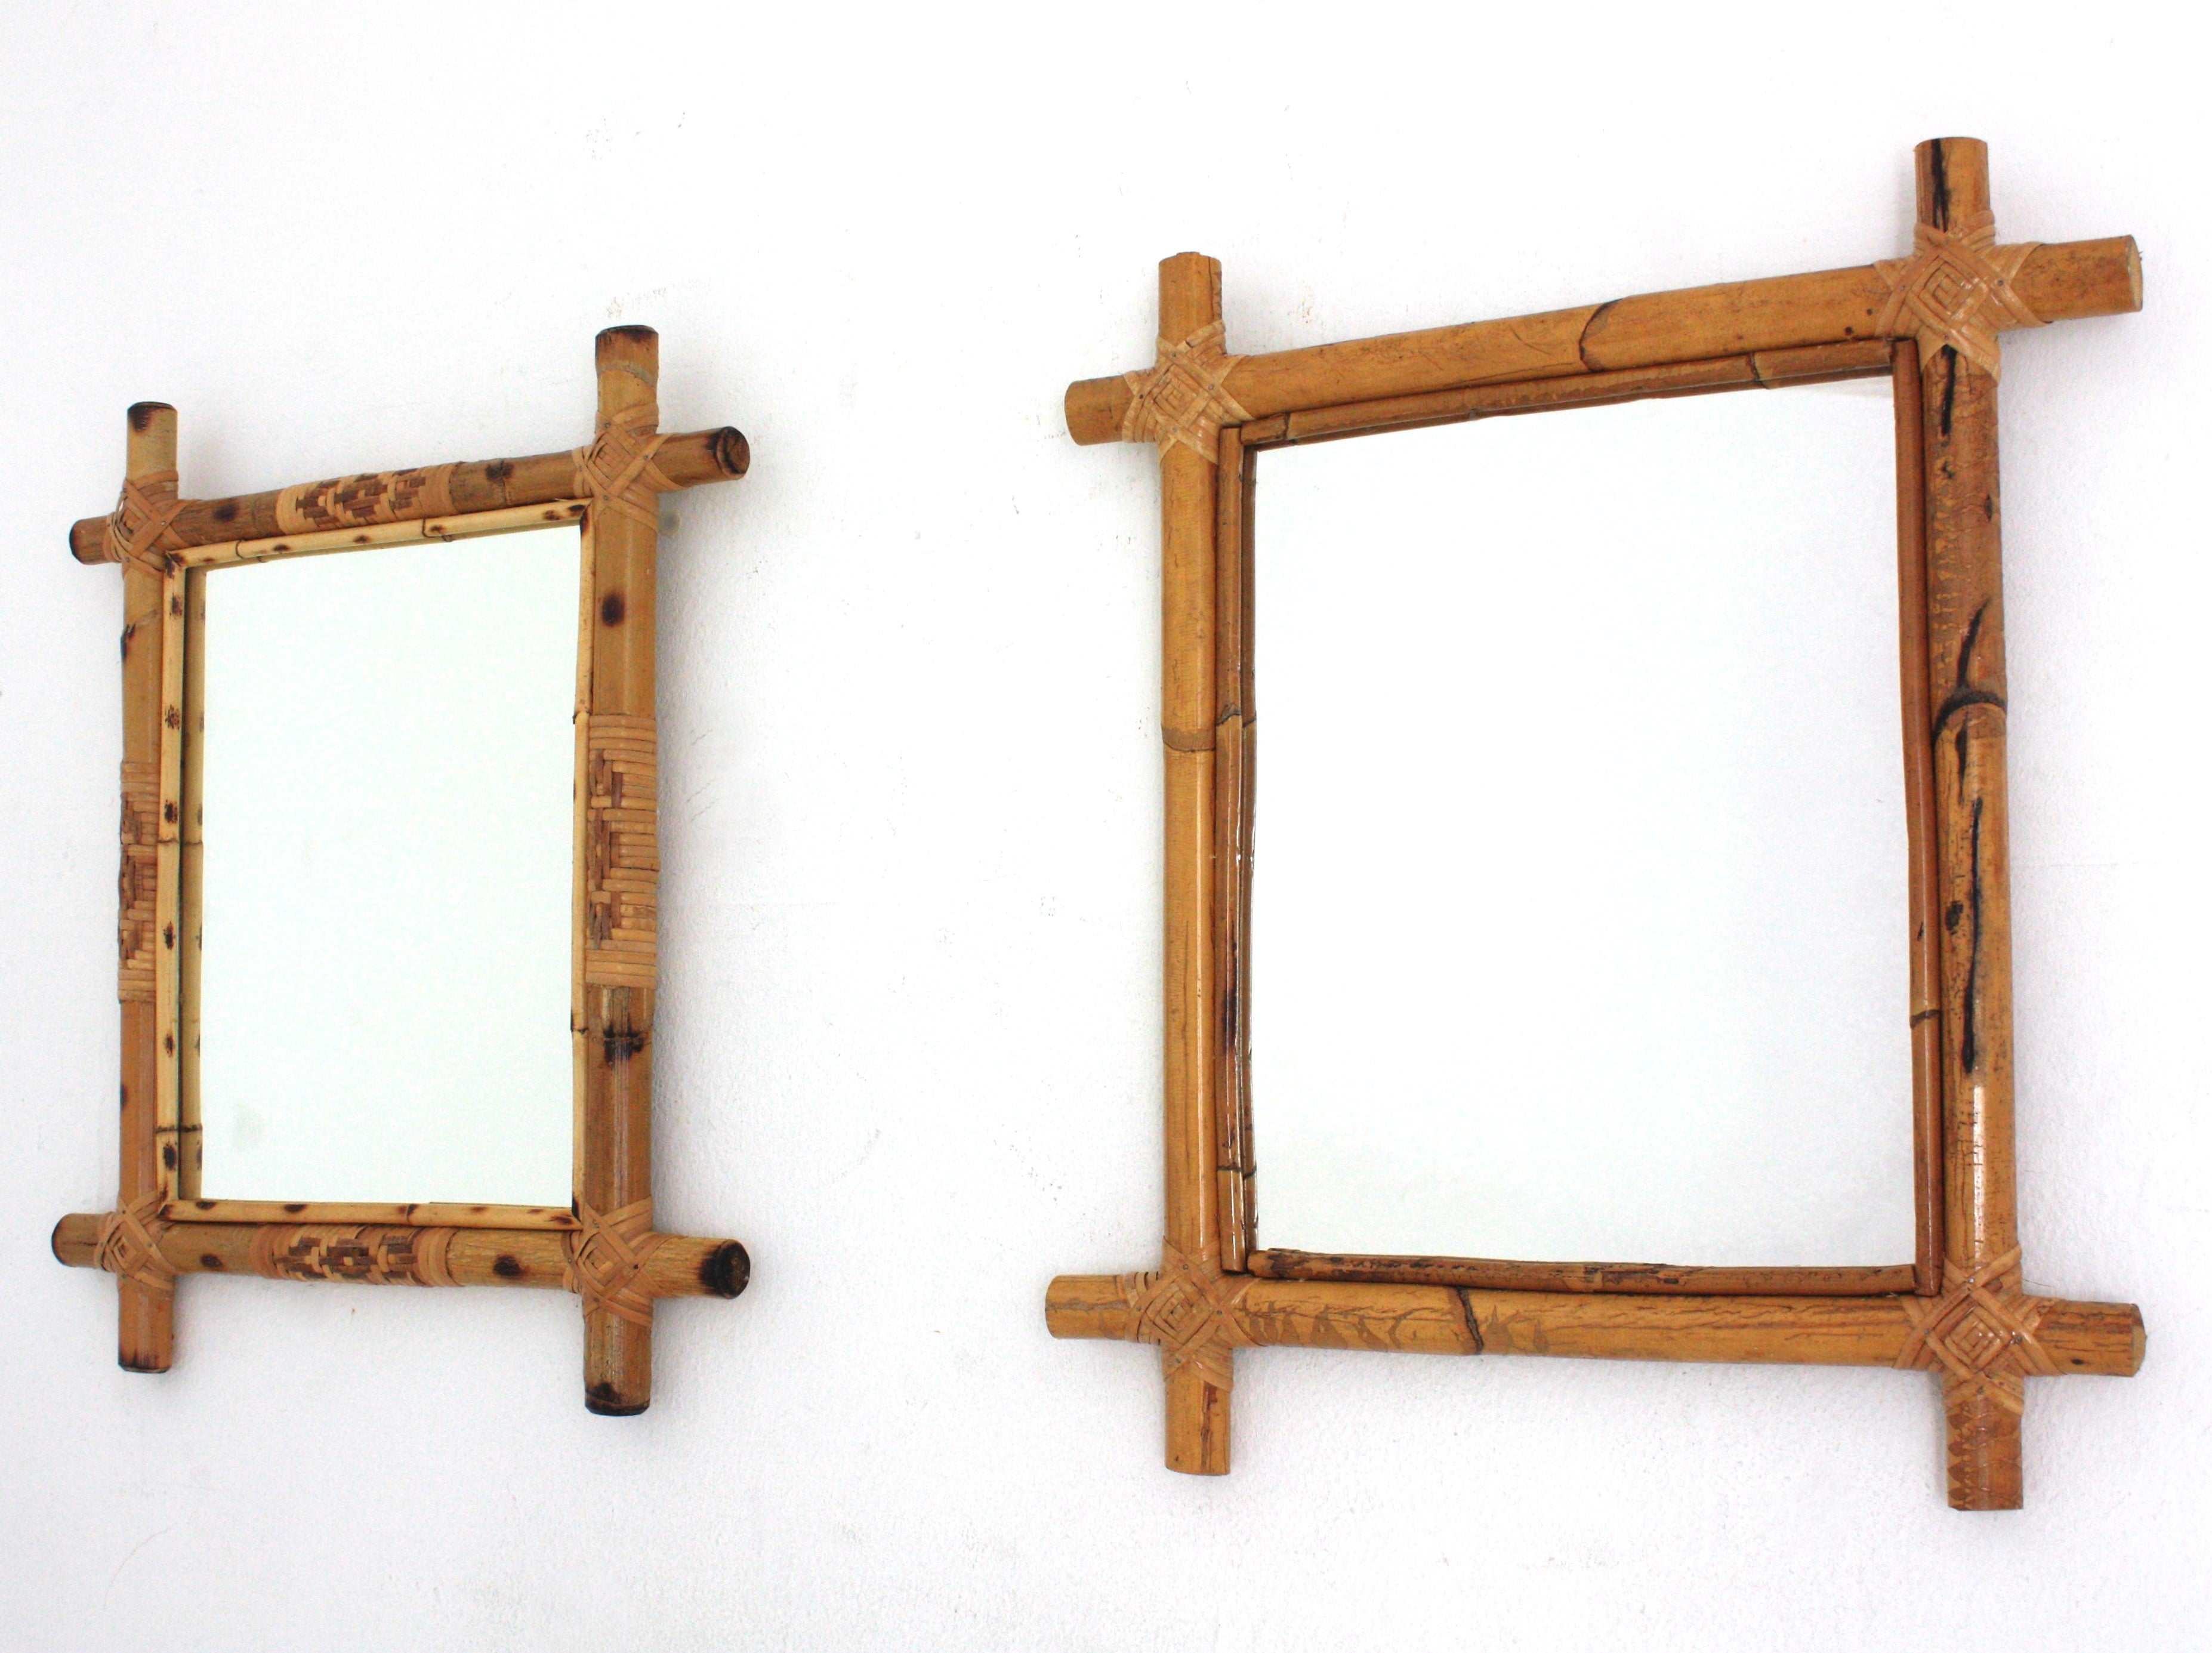 Unpassendes Paar rechteckiger Wandspiegel, Bambus, Rattan
Auffällige rechteckige Spiegel, handgefertigt aus Bambus-/Rattan-Rohr. Spanien, 1960er Jahre.
Rechteckige Spiegel aus Rattan mit gekreuzten Ecken Rahmen.
Inspiriert durch die Entwürfe von JM